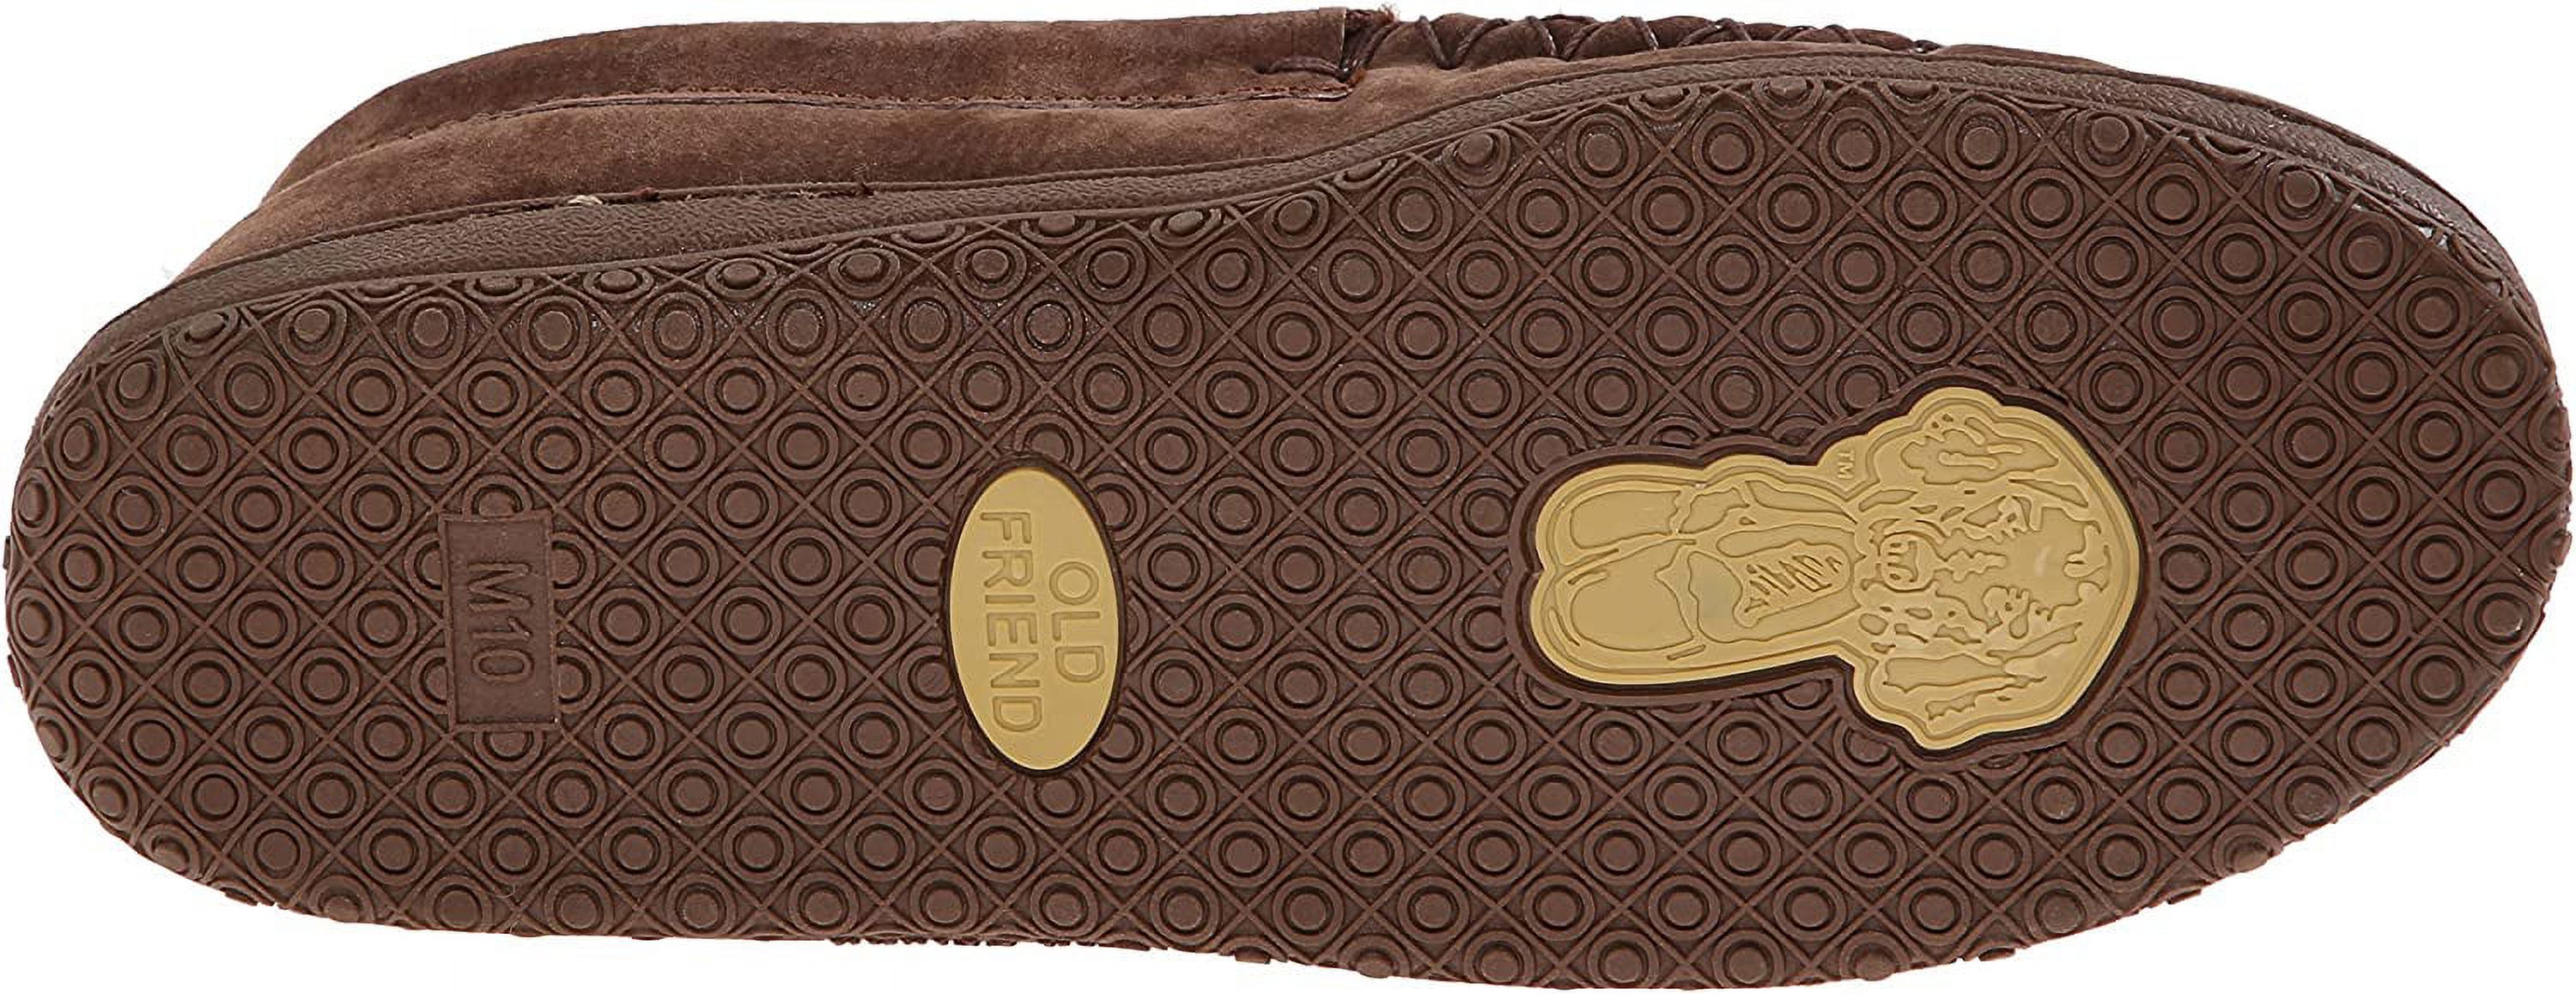 Old Friend Footwear Men's Brown Loafer Moccasin 481166-M (9) - image 4 of 8